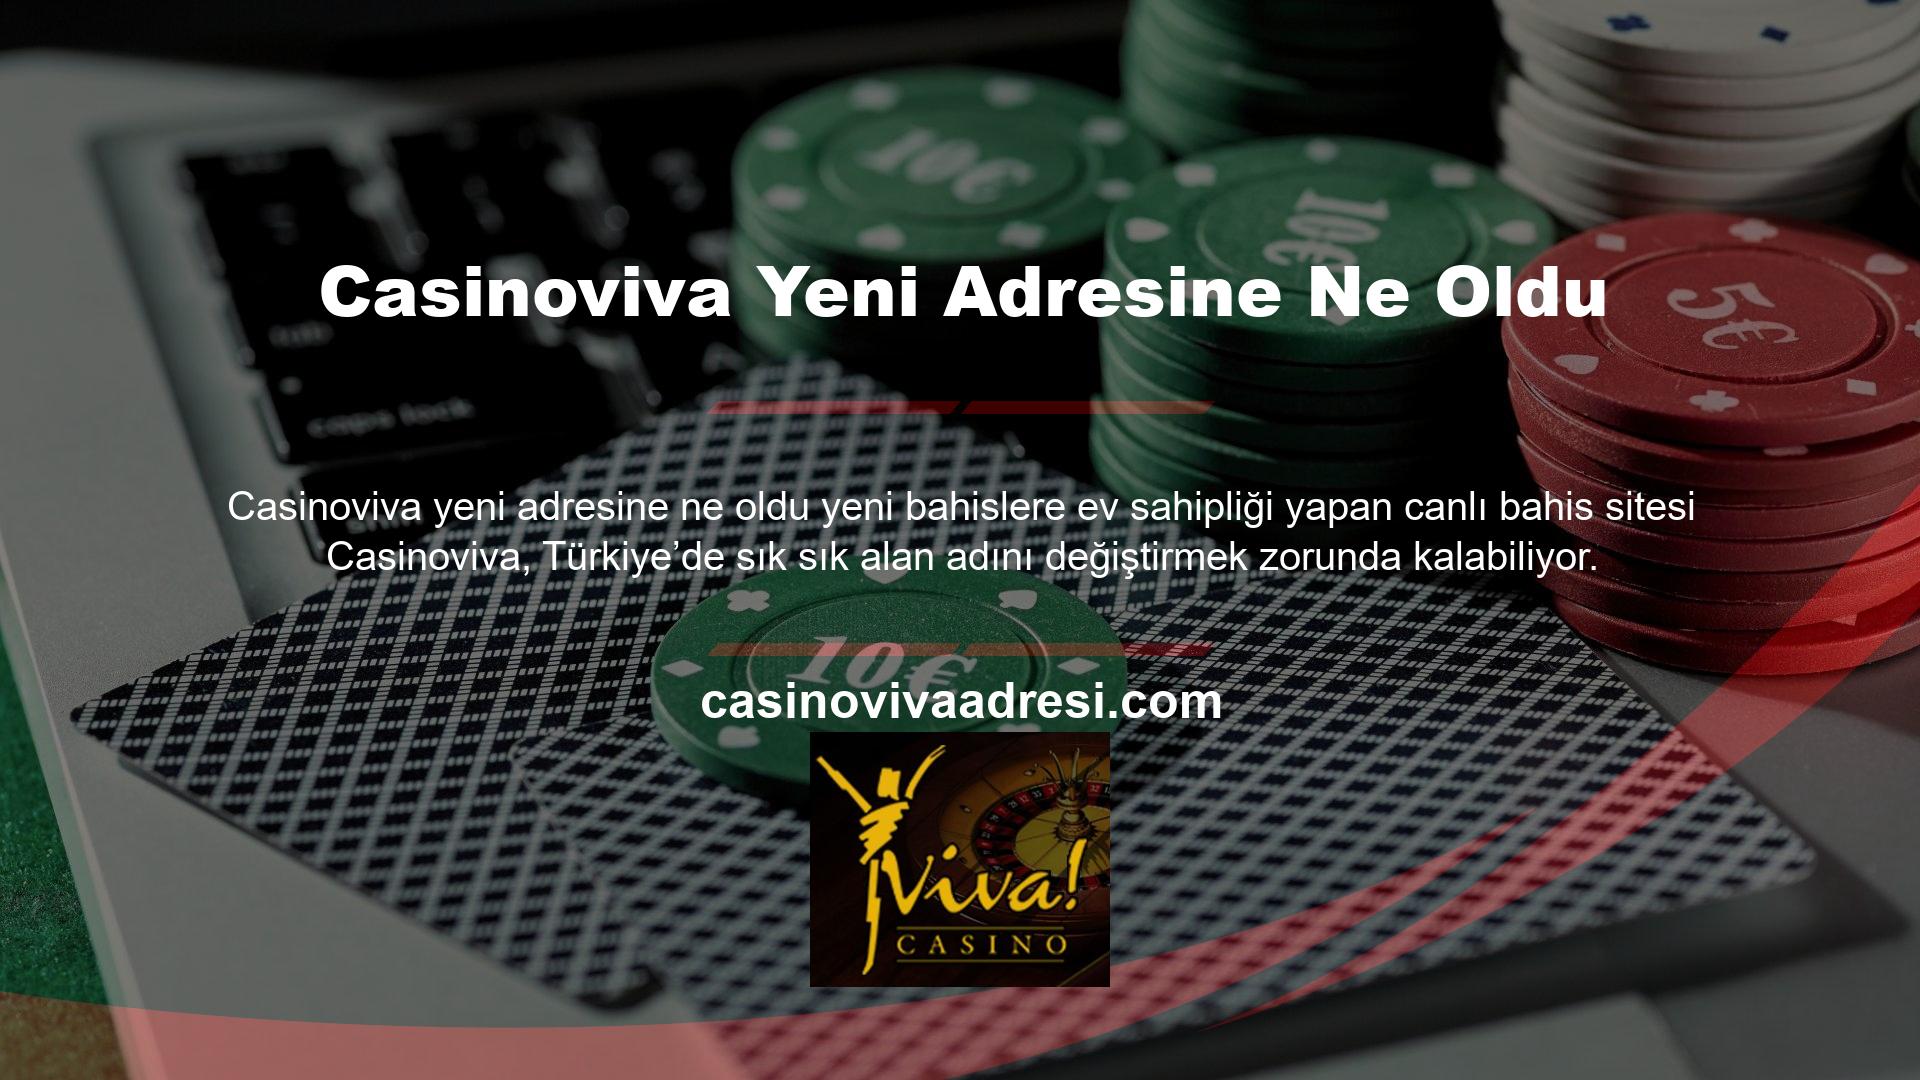 Spor ve casino kategorilerindeki tüm bahis seçenekleri artık mevcut olan yeni adres URL'sine gönderilecektir